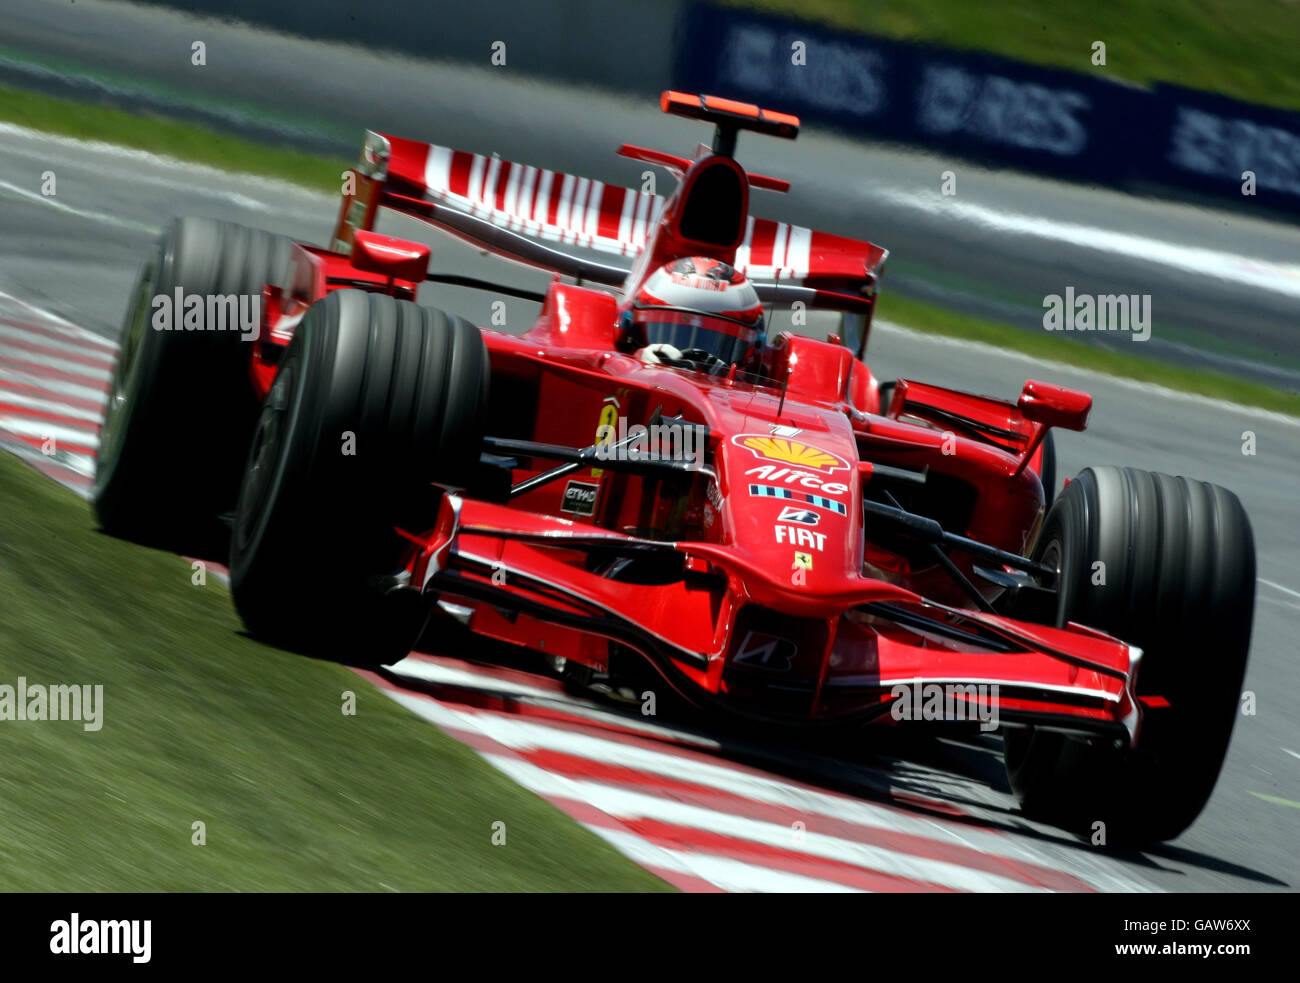 Formel-1-Motorsport - Großer Preis Von Frankreich - Qualifikation - Magny Cours. Der Finnische Kimi Räikkönen im Ferrari während des Qualifyings in Magny-Cours, Nevers, Frankreich. Stockfoto